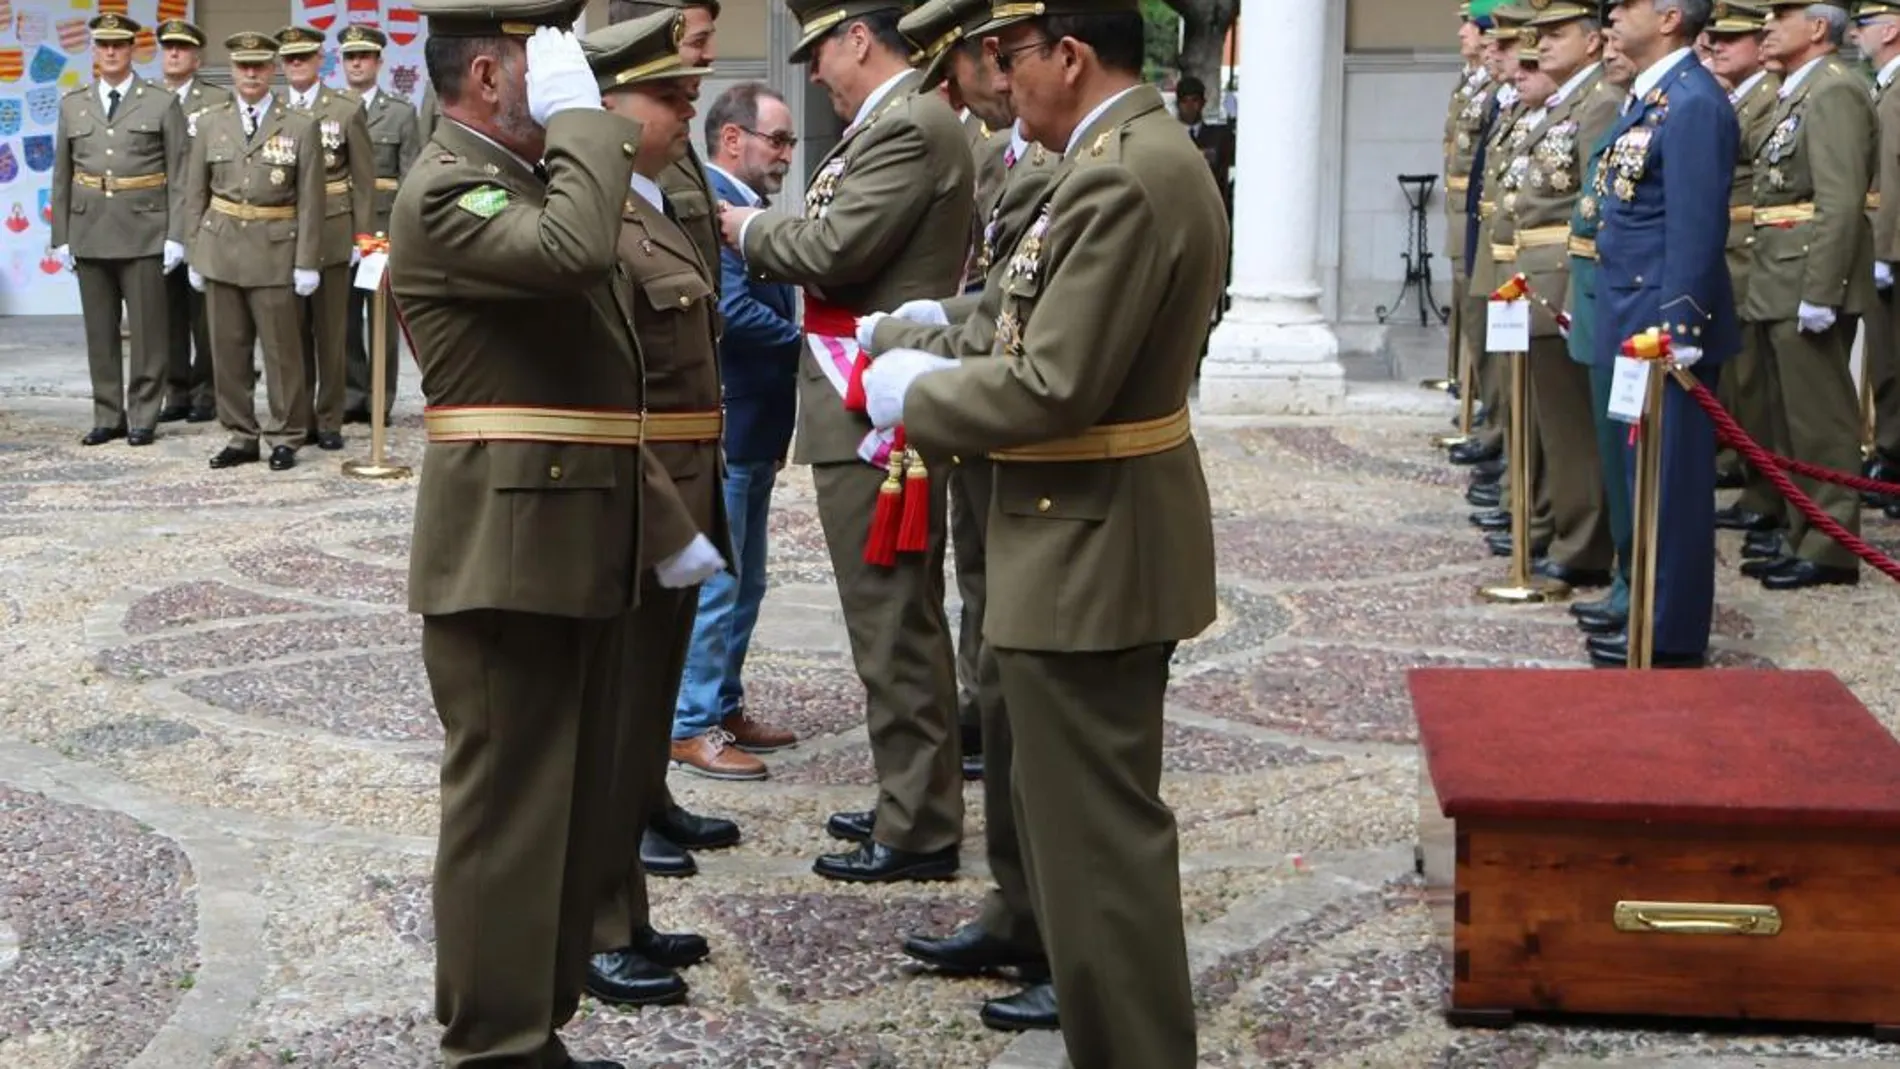 El jefe de la Cuarta Subinspección General del Ejército y Comandante militar de Valladolid y Palencia, José Rivas Moriana, impone condecoraciones a los miembros del Cuerpo de Ingenieros Politécnicos